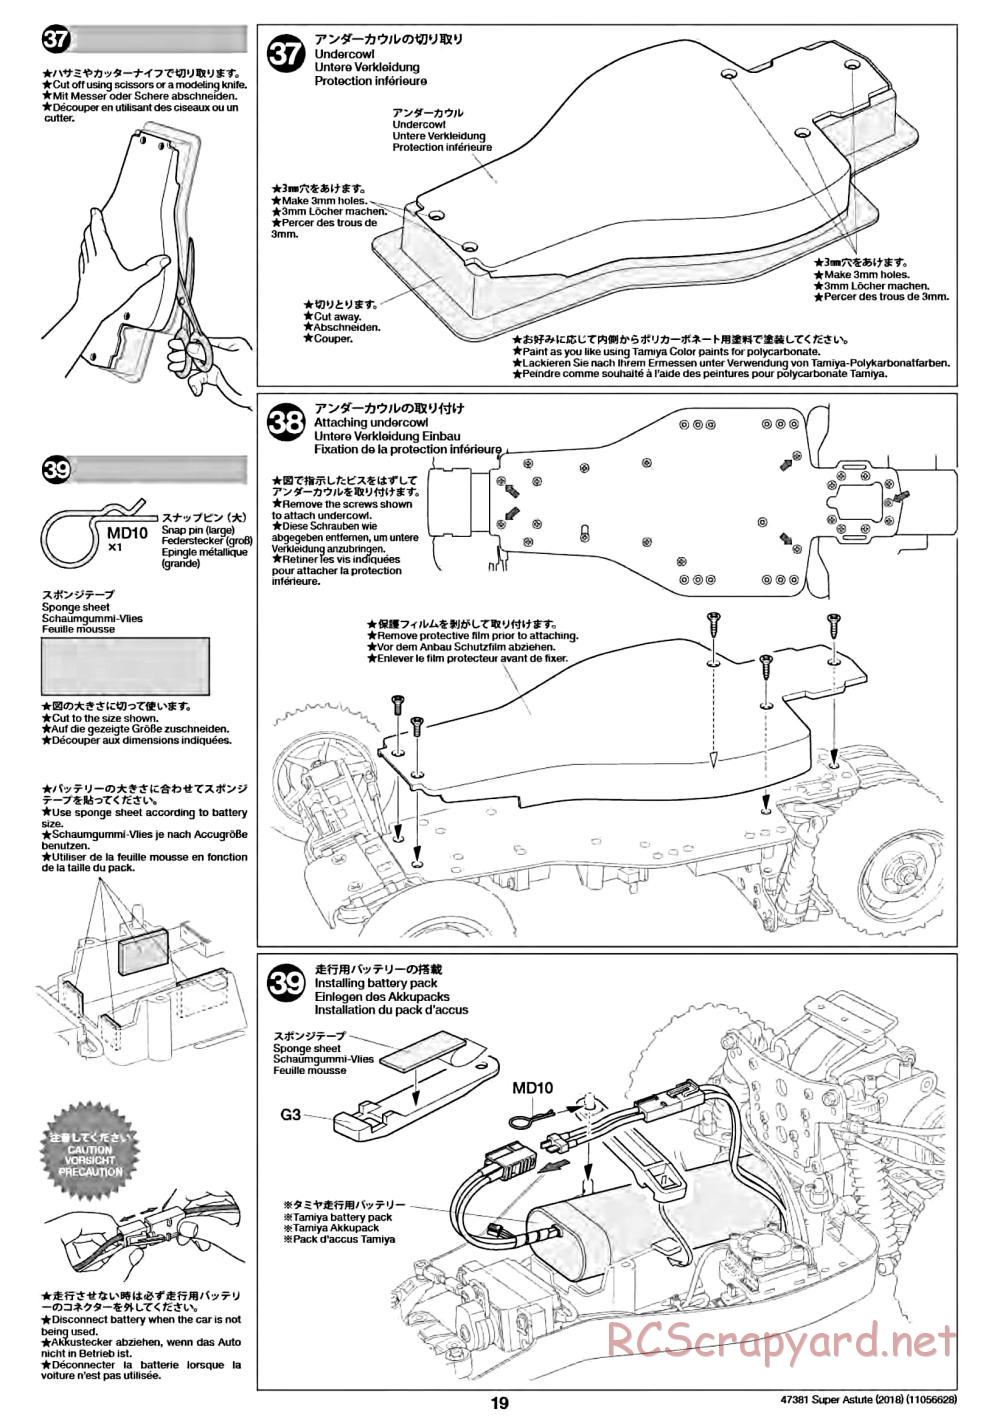 Tamiya - Super Astute (2018) Chassis - Manual - Page 19